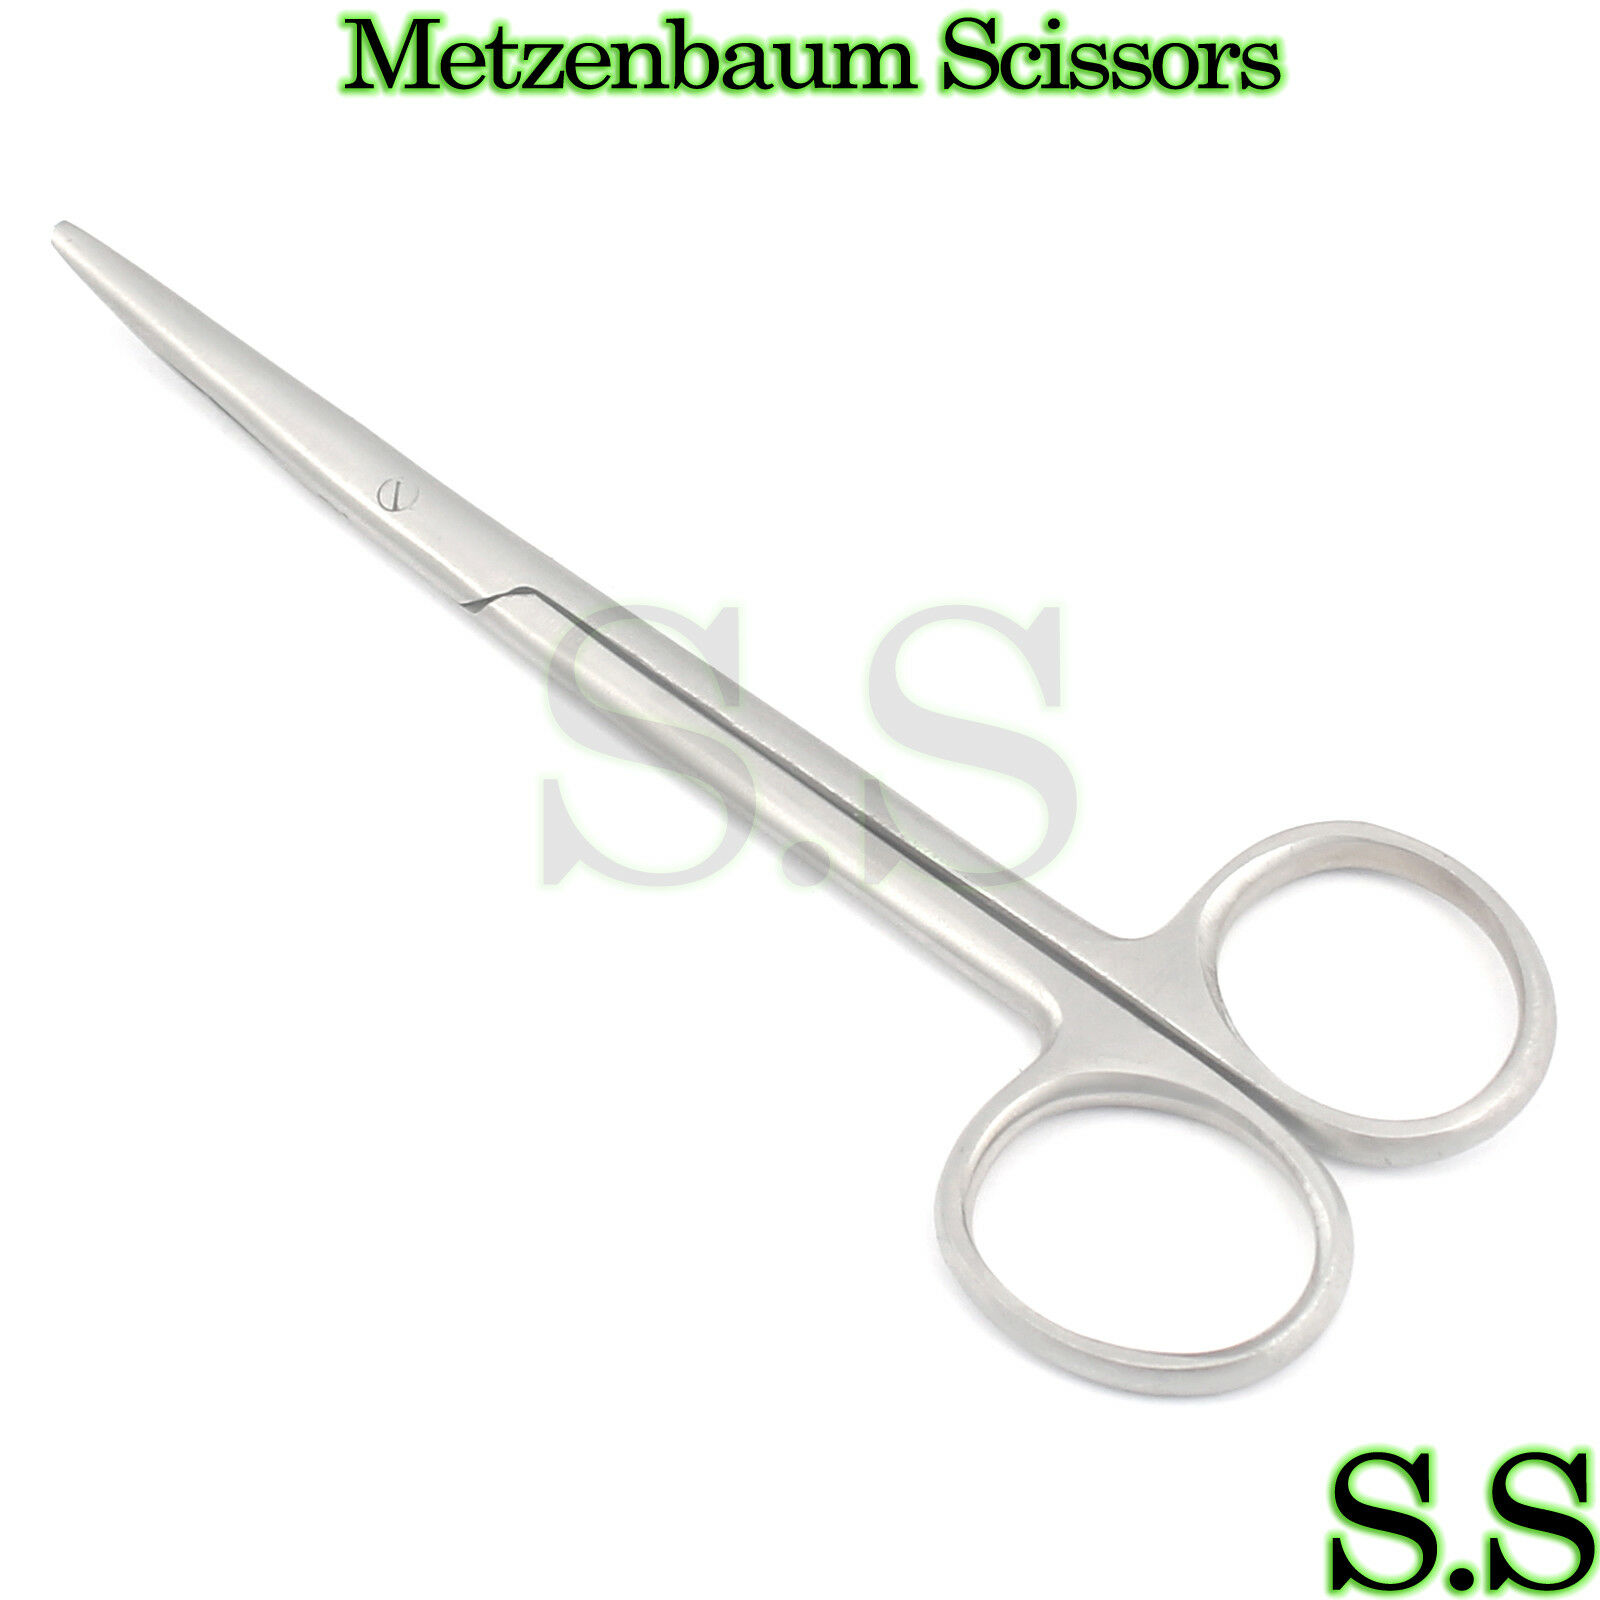 O.r. Grade Metzenbaum Scissors 5.5" Curved Surgical New